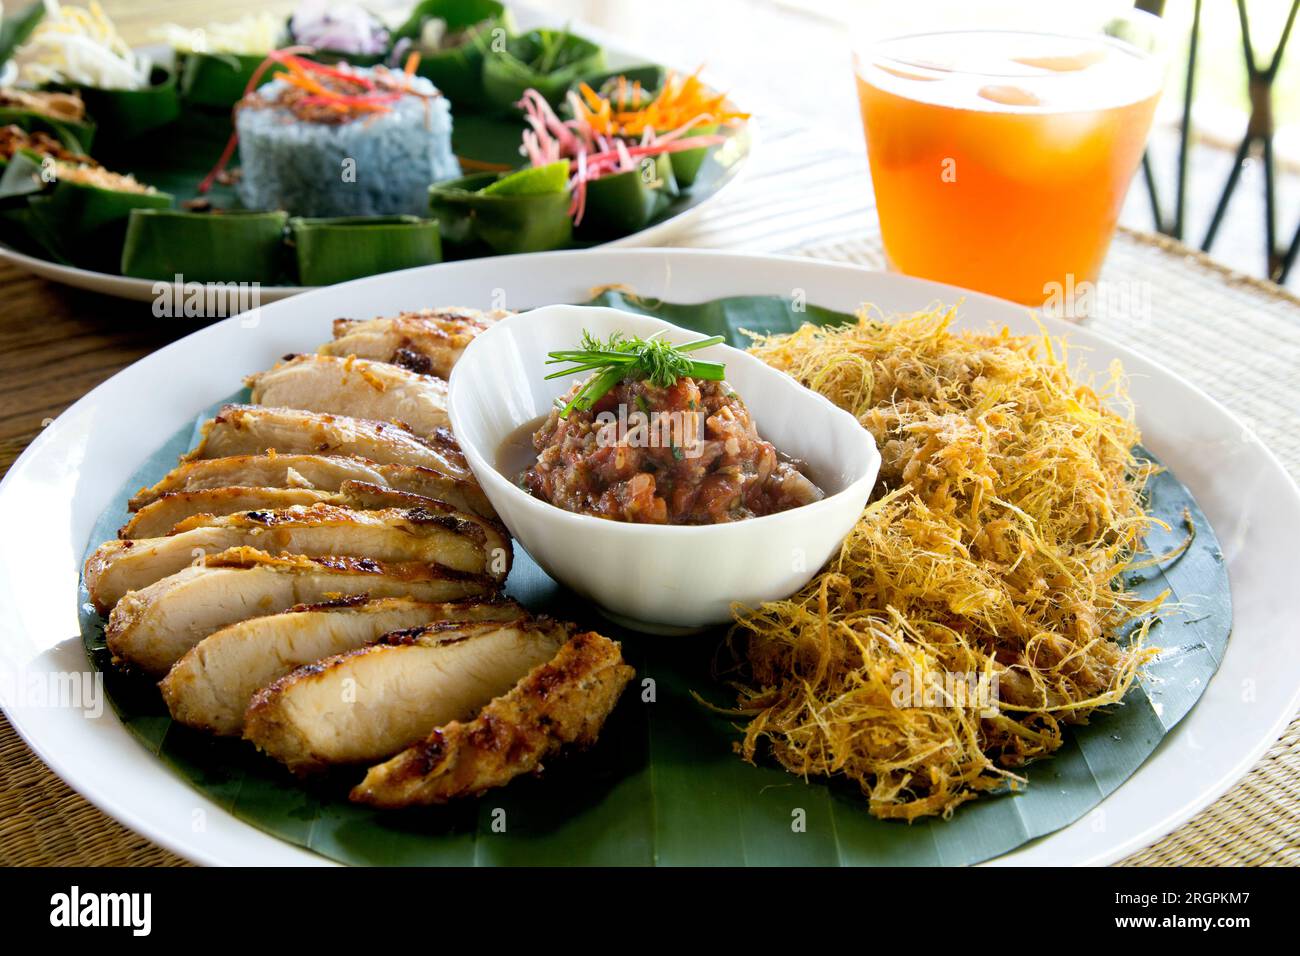 La recette thaïlandaise de poulet à la citronnelle est faite avec la meilleure marinade citronnée et peut être grillée, cuite au four ou sautée. Banque D'Images